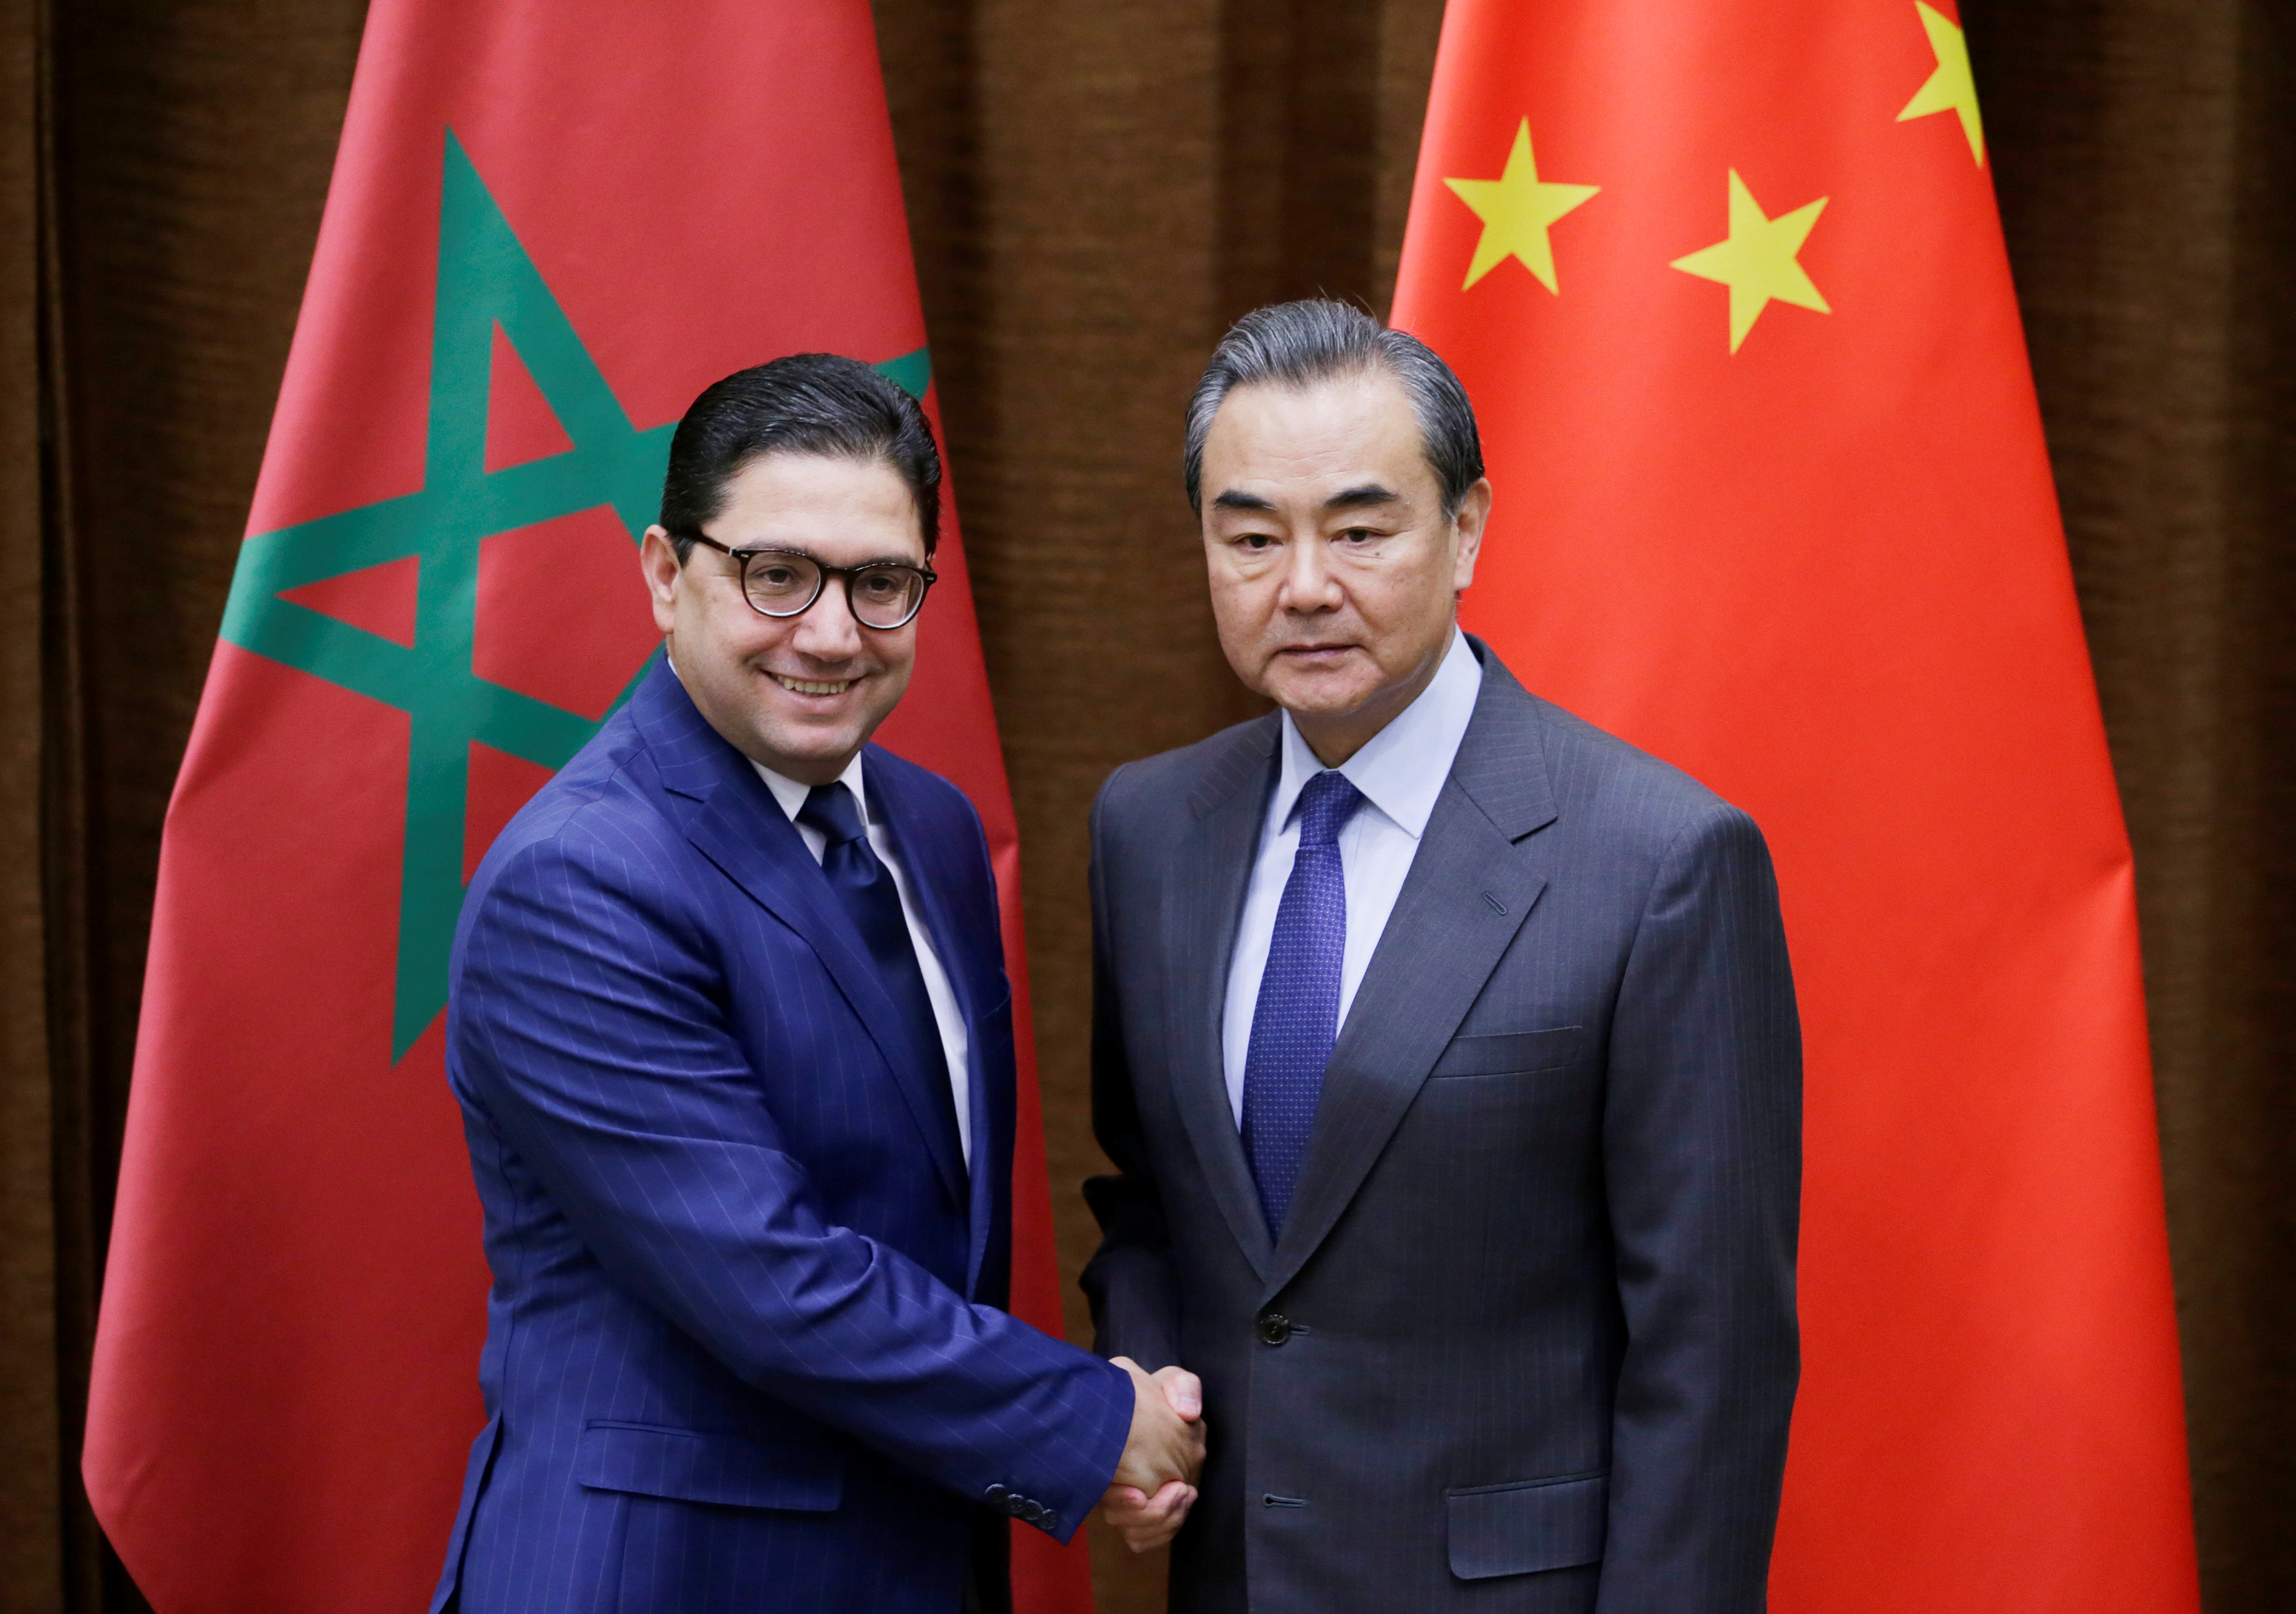 دراسة تشيد بالشراكة الاستراتيجية بين الرباط و بكين وترصد فوائد انضمام المغرب إلى مبادرة “الحزام والطريق”